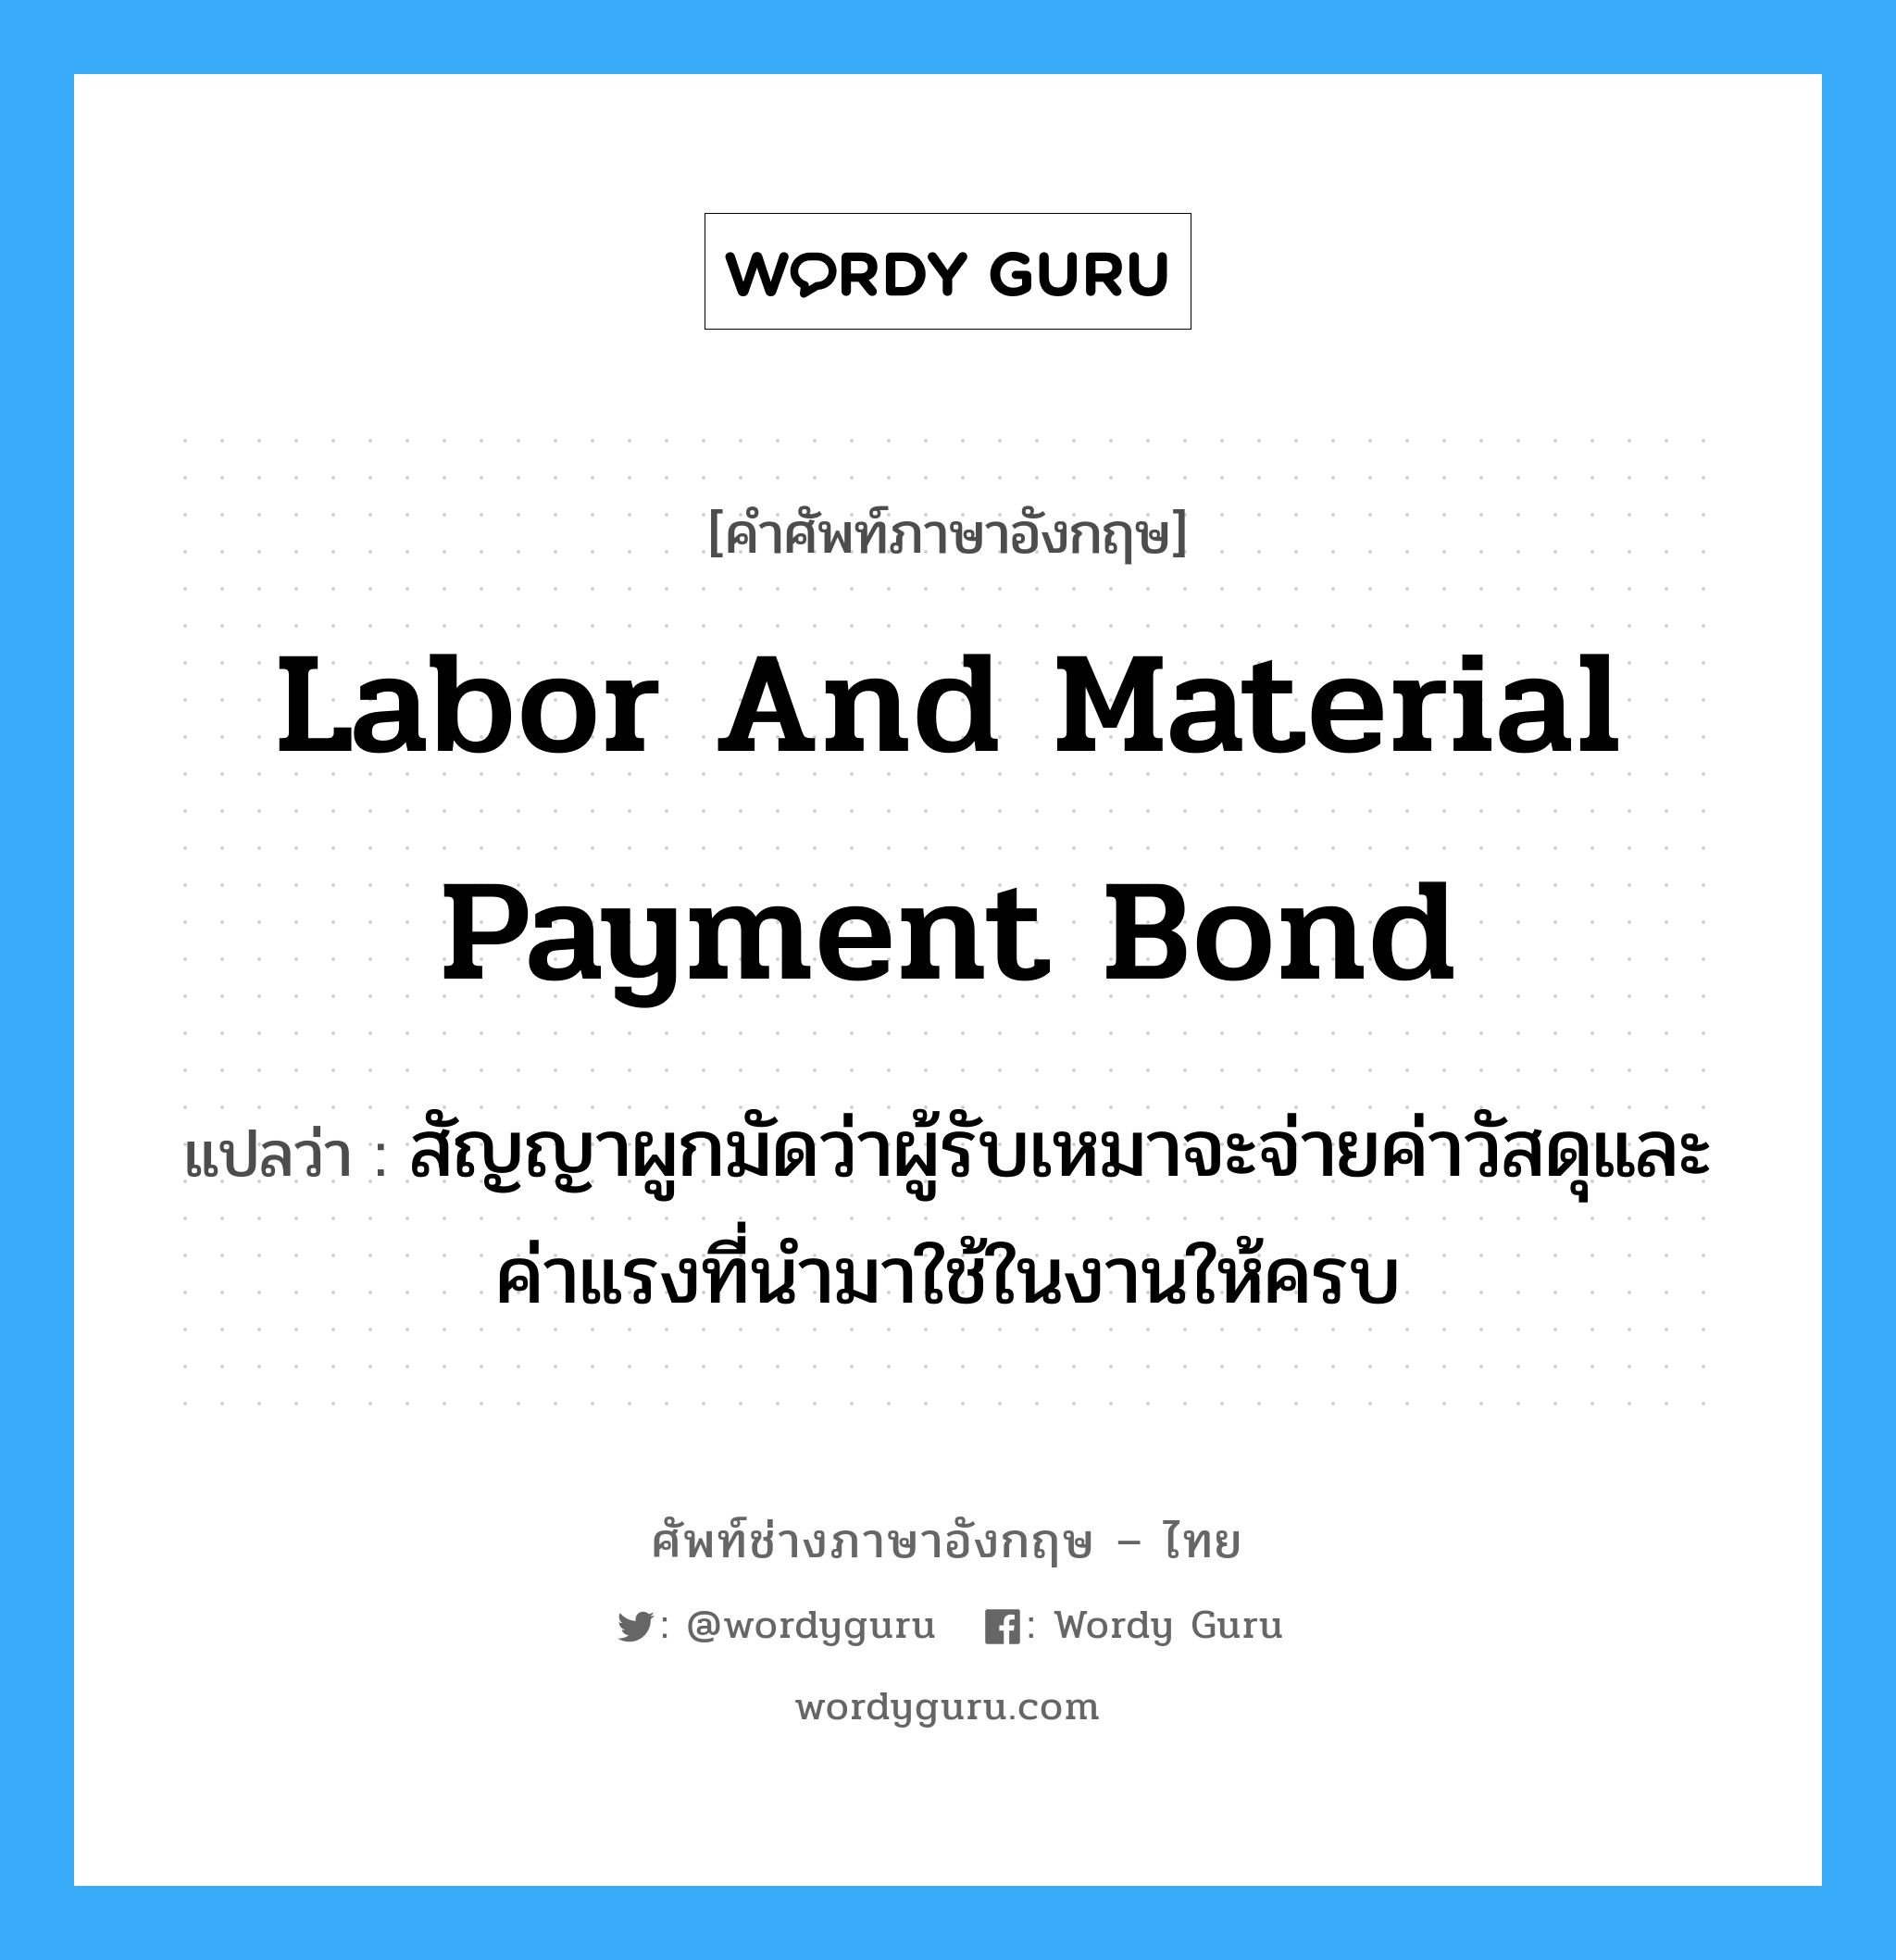 Labor and Material Payment Bond แปลว่า?, คำศัพท์ช่างภาษาอังกฤษ - ไทย Labor and Material Payment Bond คำศัพท์ภาษาอังกฤษ Labor and Material Payment Bond แปลว่า สัญญาผูกมัดว่าผู้รับเหมาจะจ่ายค่าวัสดุและค่าแรงที่นำมาใช้ในงานให้ครบ